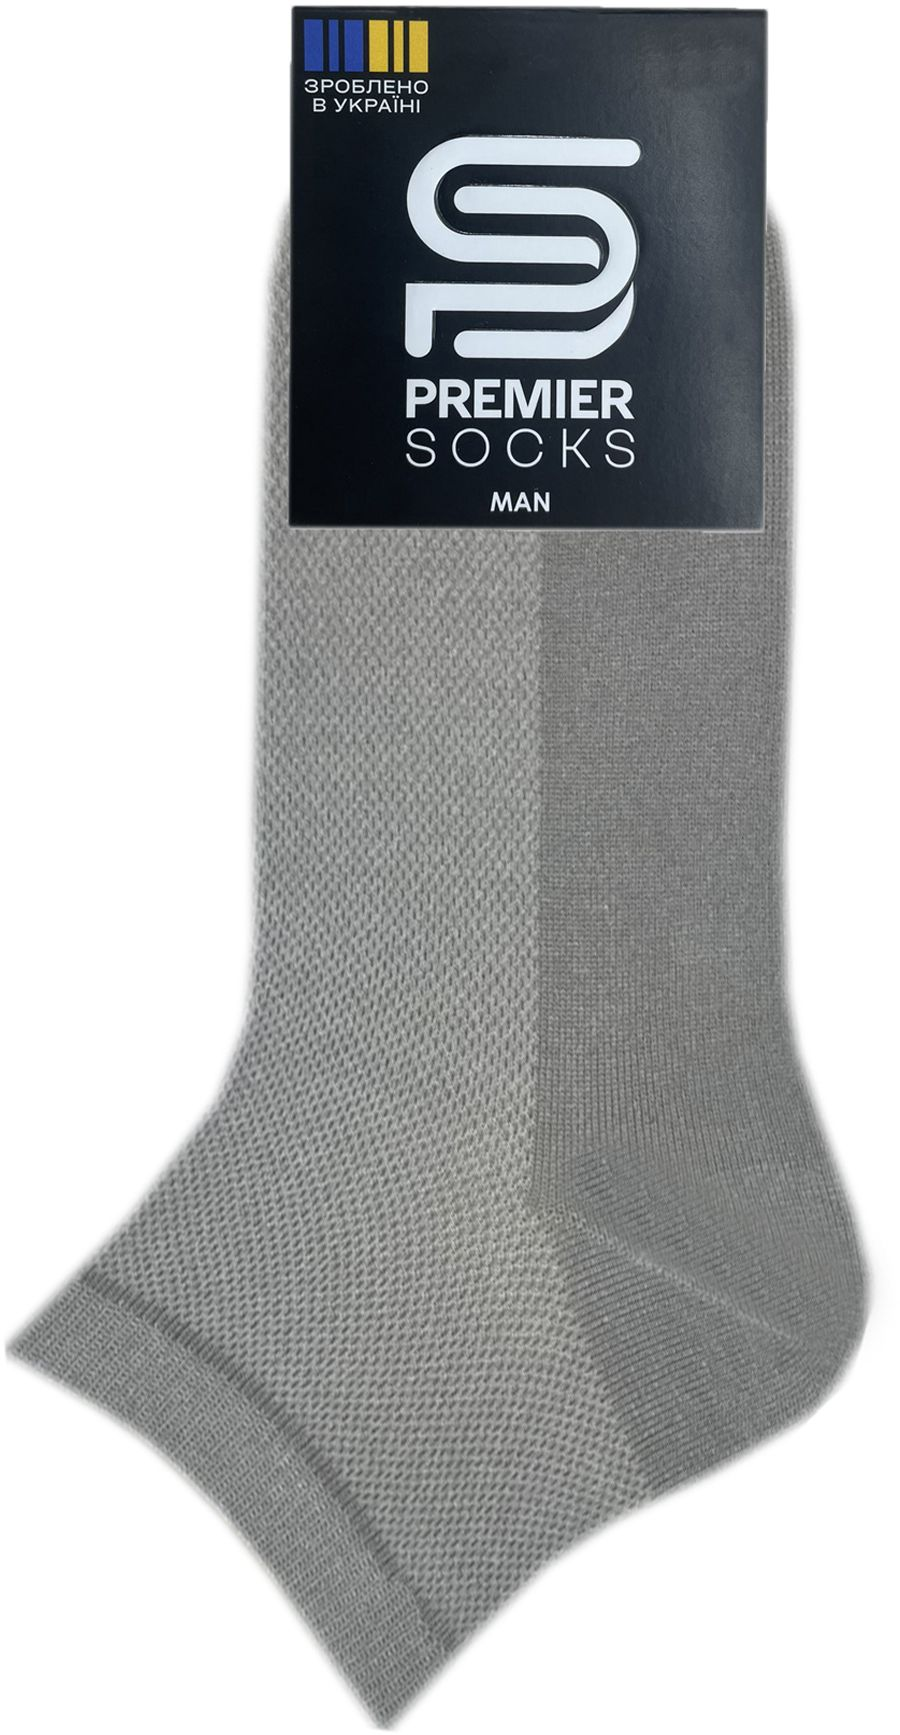 Носки мужские Premier Socks 44-45 1 пара светло-серые (4820163317908) фото 2